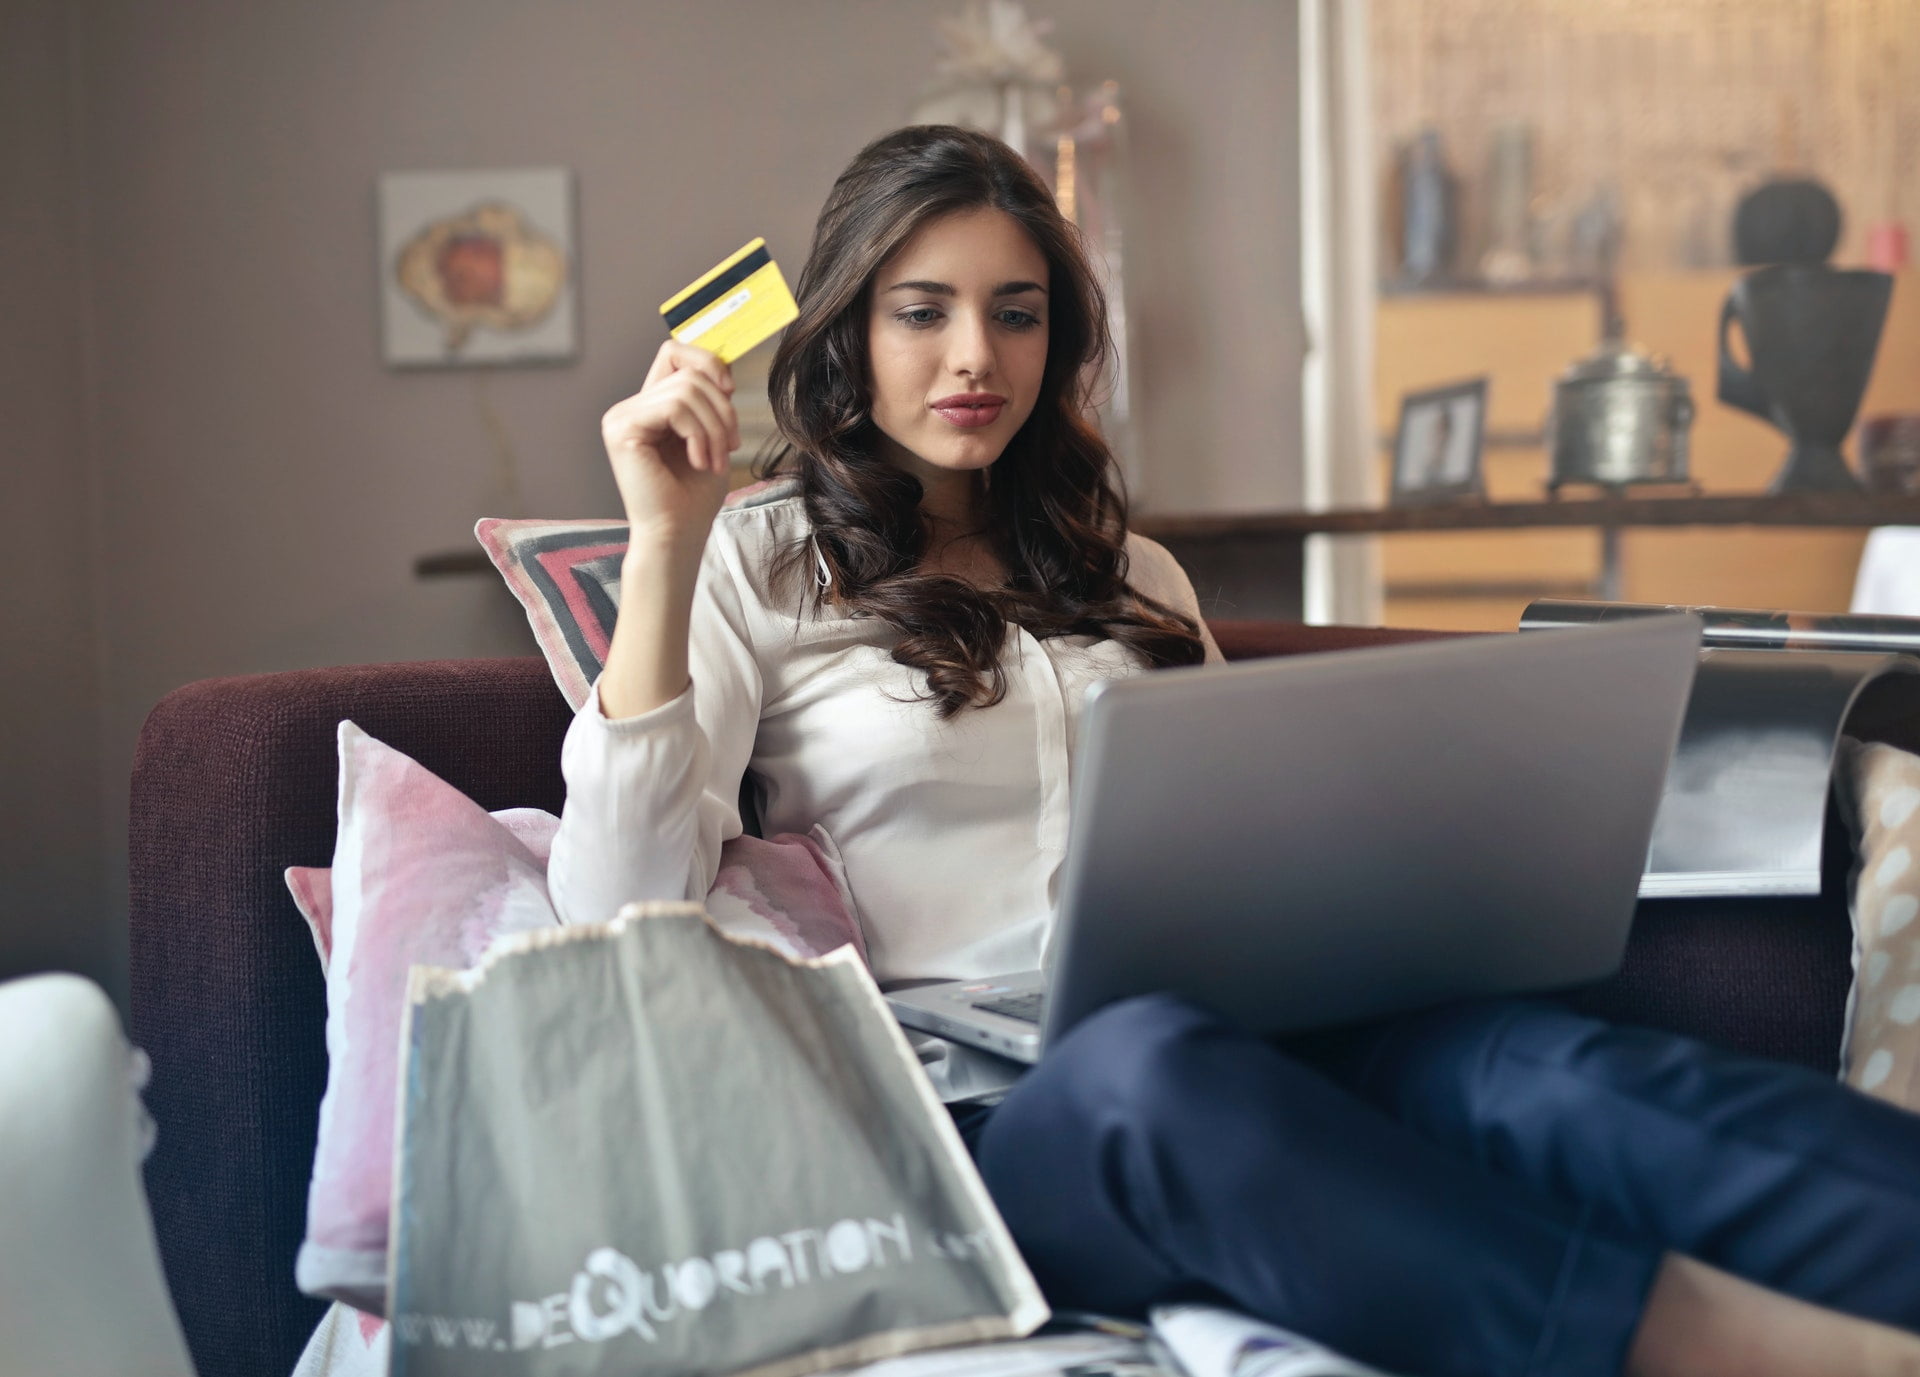 聲寶推 e-Payless 百利市購物中心 強化用戶體驗和專業安裝服務 woman holding credit card while operating silver laptop